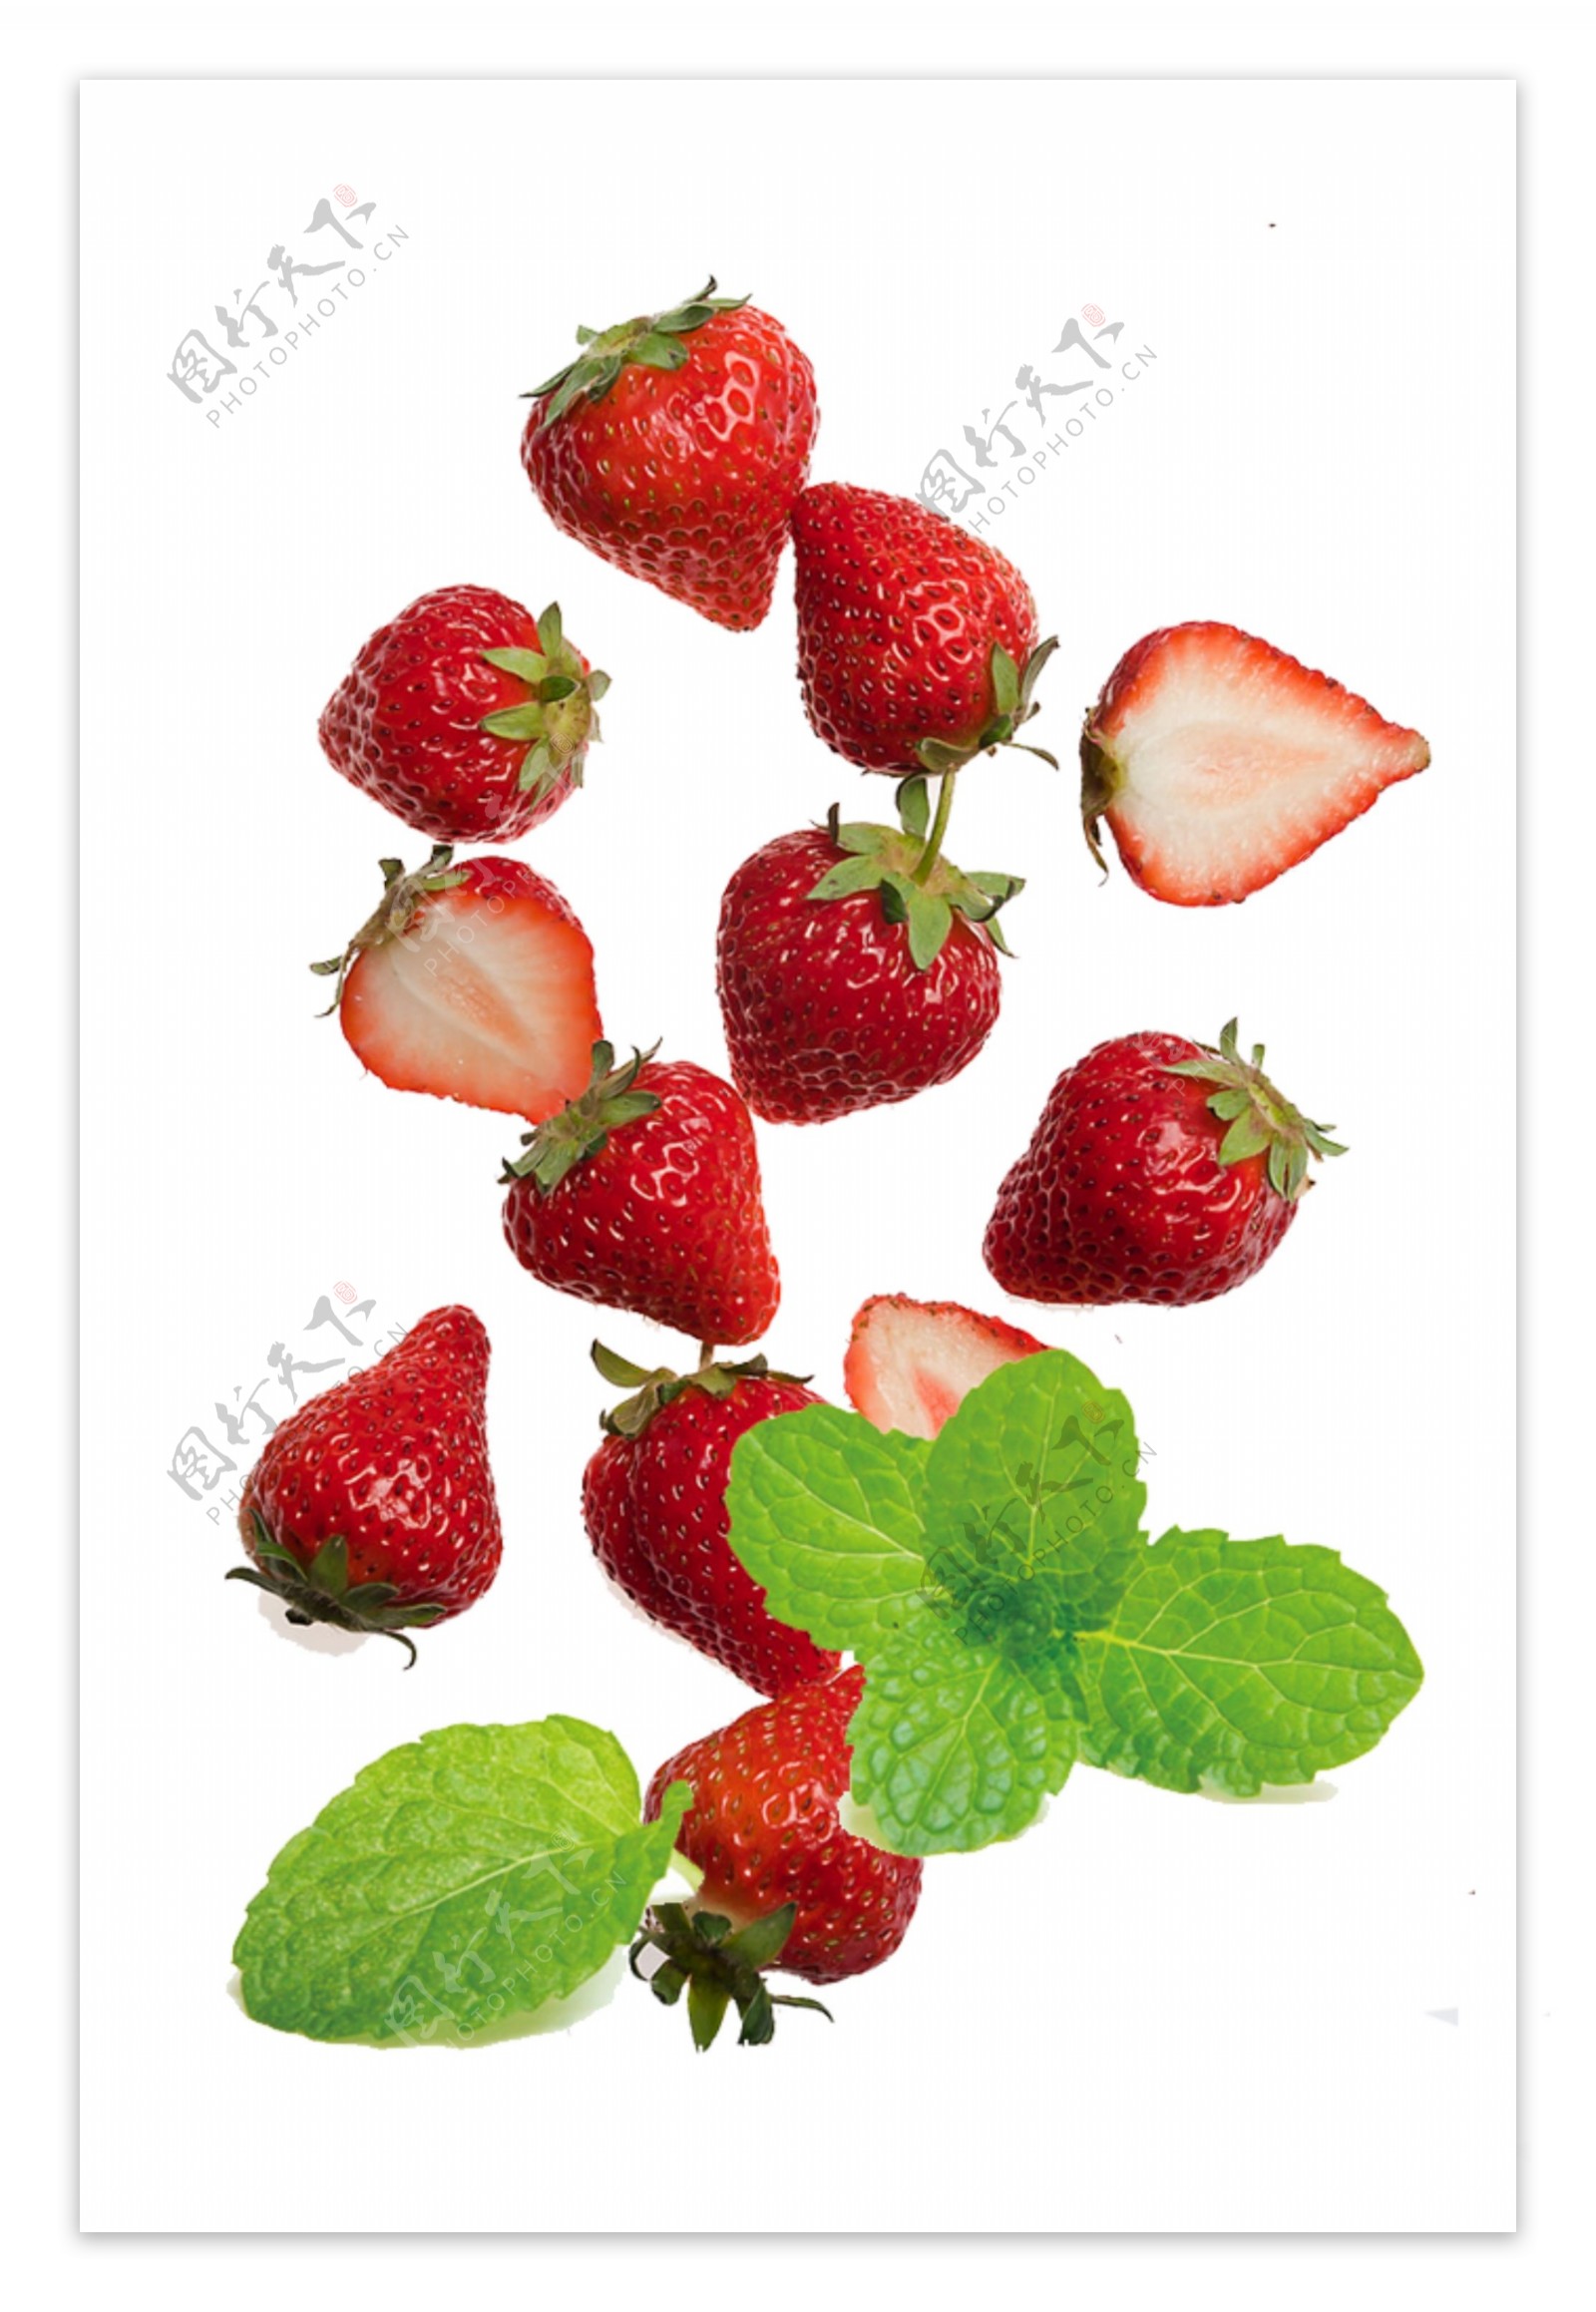 薄荷草莓